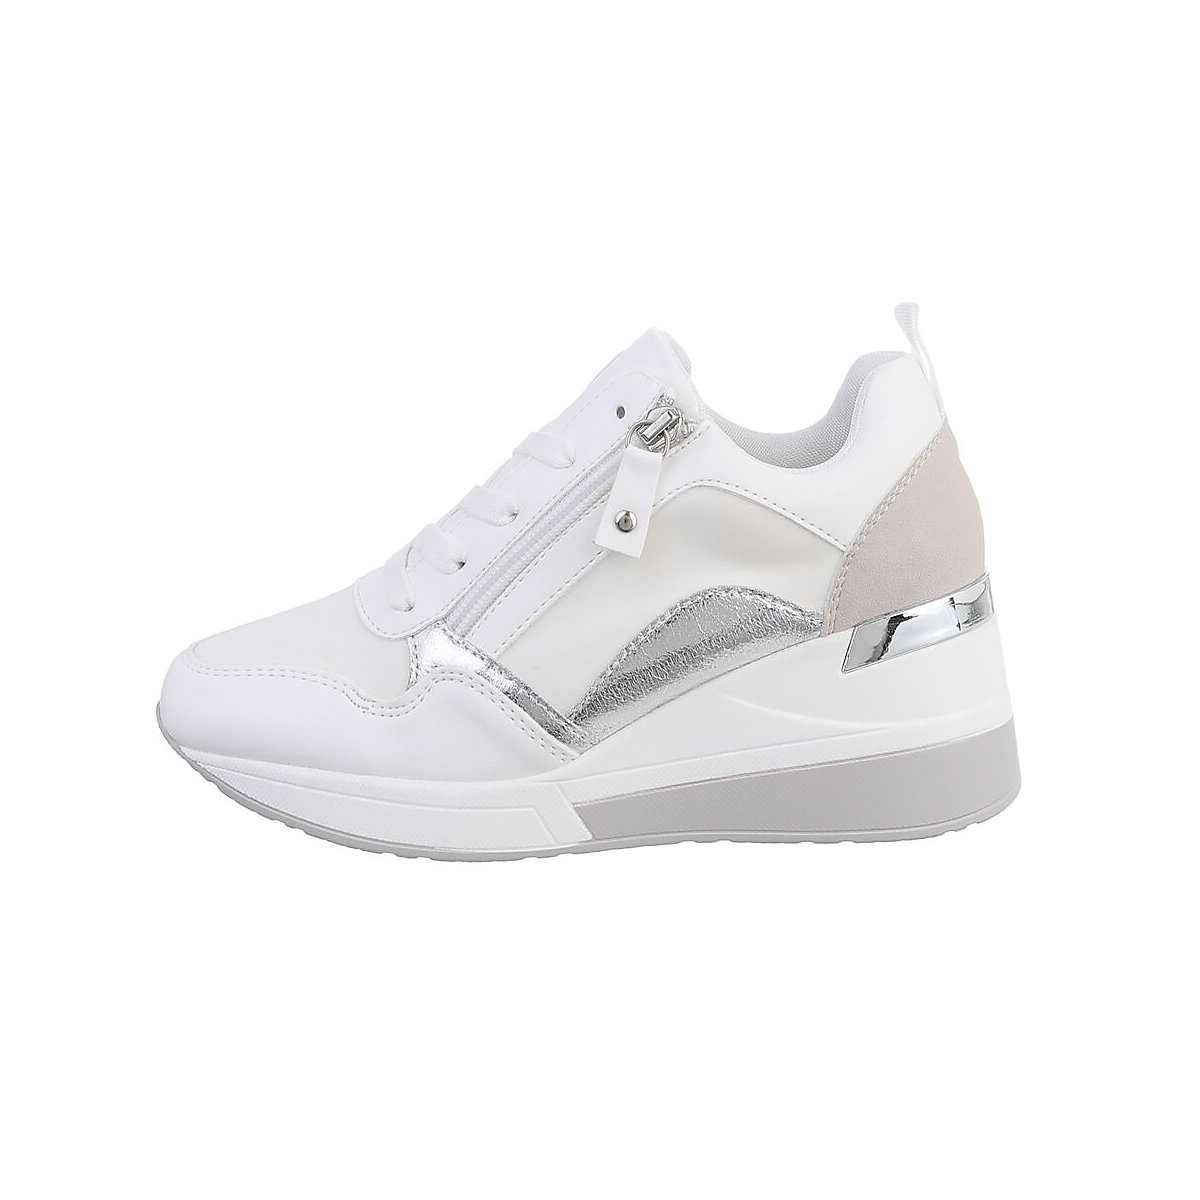 Ital-Design Sneakers Low Lochschnürung Keilabsatz/Wedge Reißverschluss weiß/grau